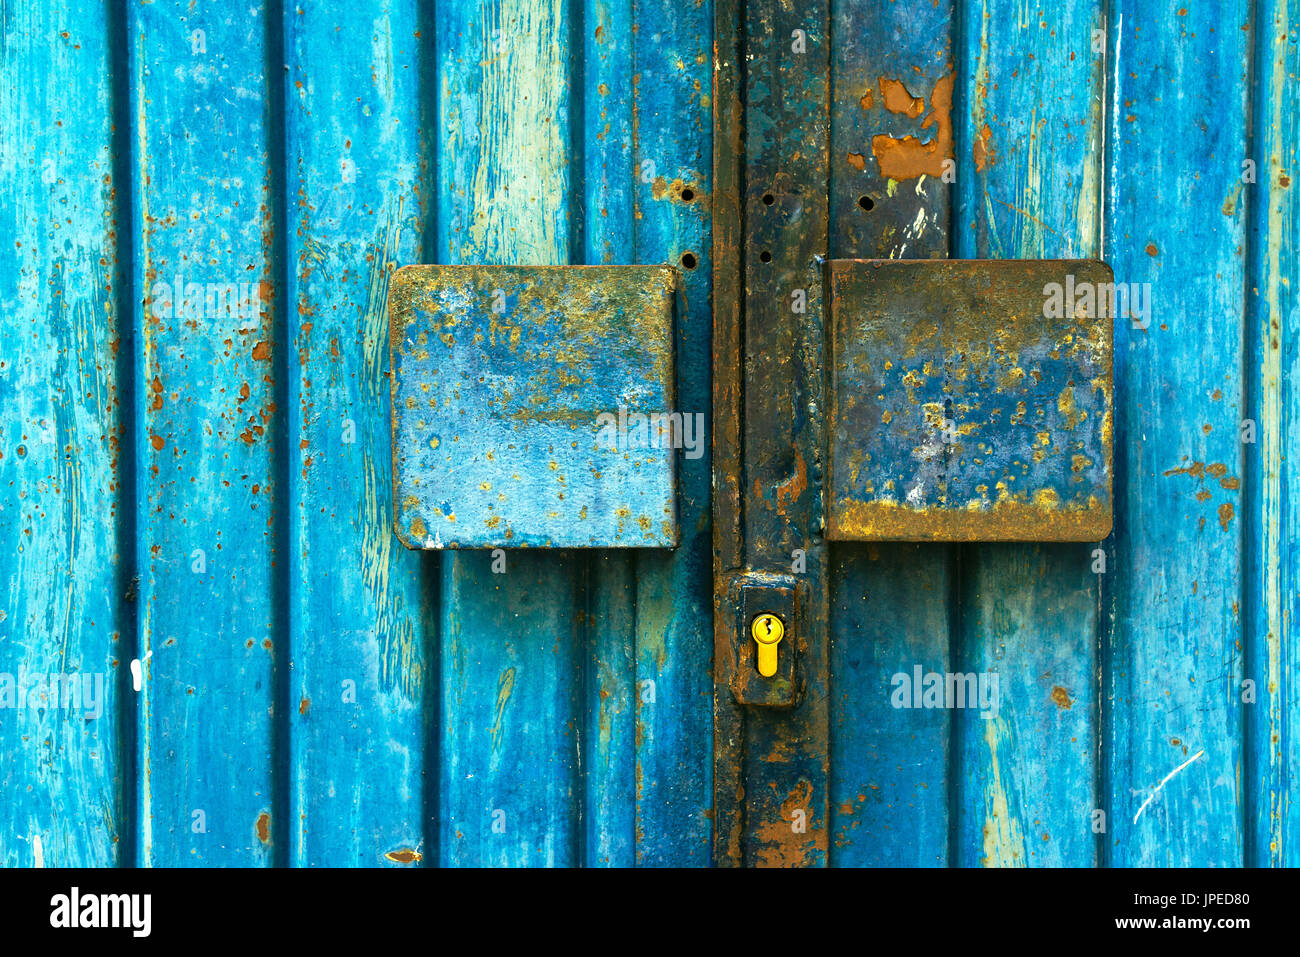 Grunge metal azul de la puerta del garaje, tiempo gastado metálico de entrada a un aparcamiento privado cerrado Foto de stock